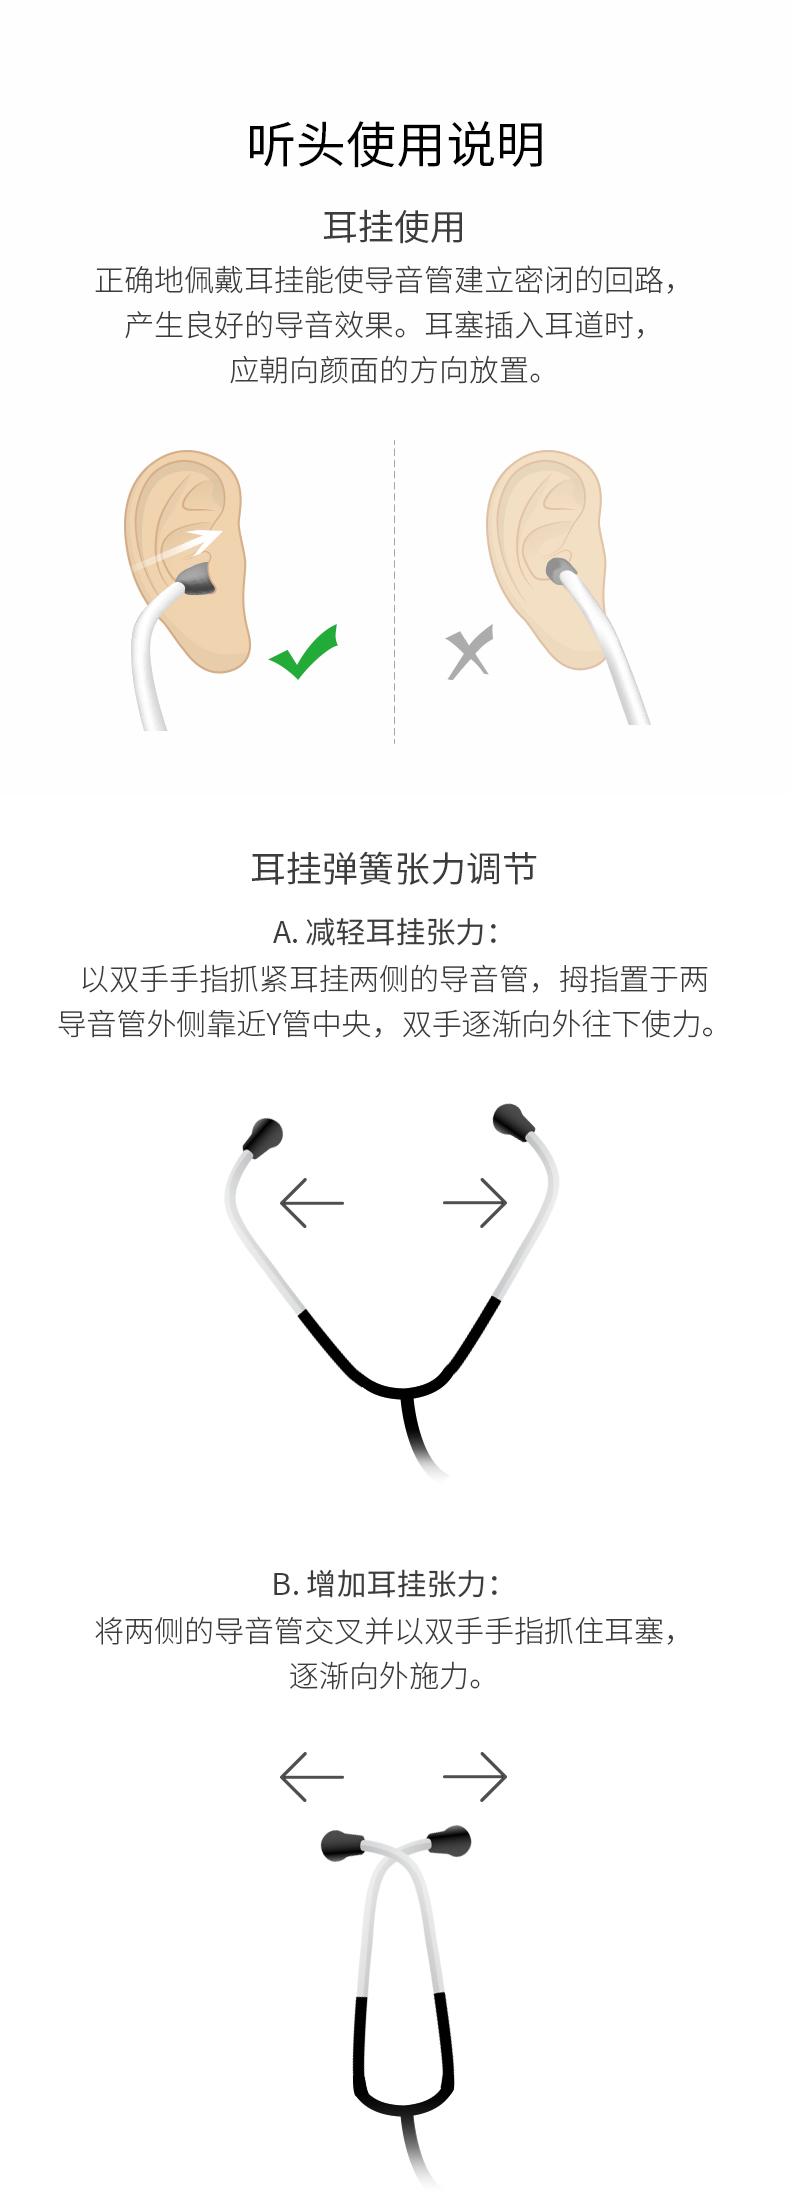 乐康医疗器械—江苏鱼跃单用听诊器经典版